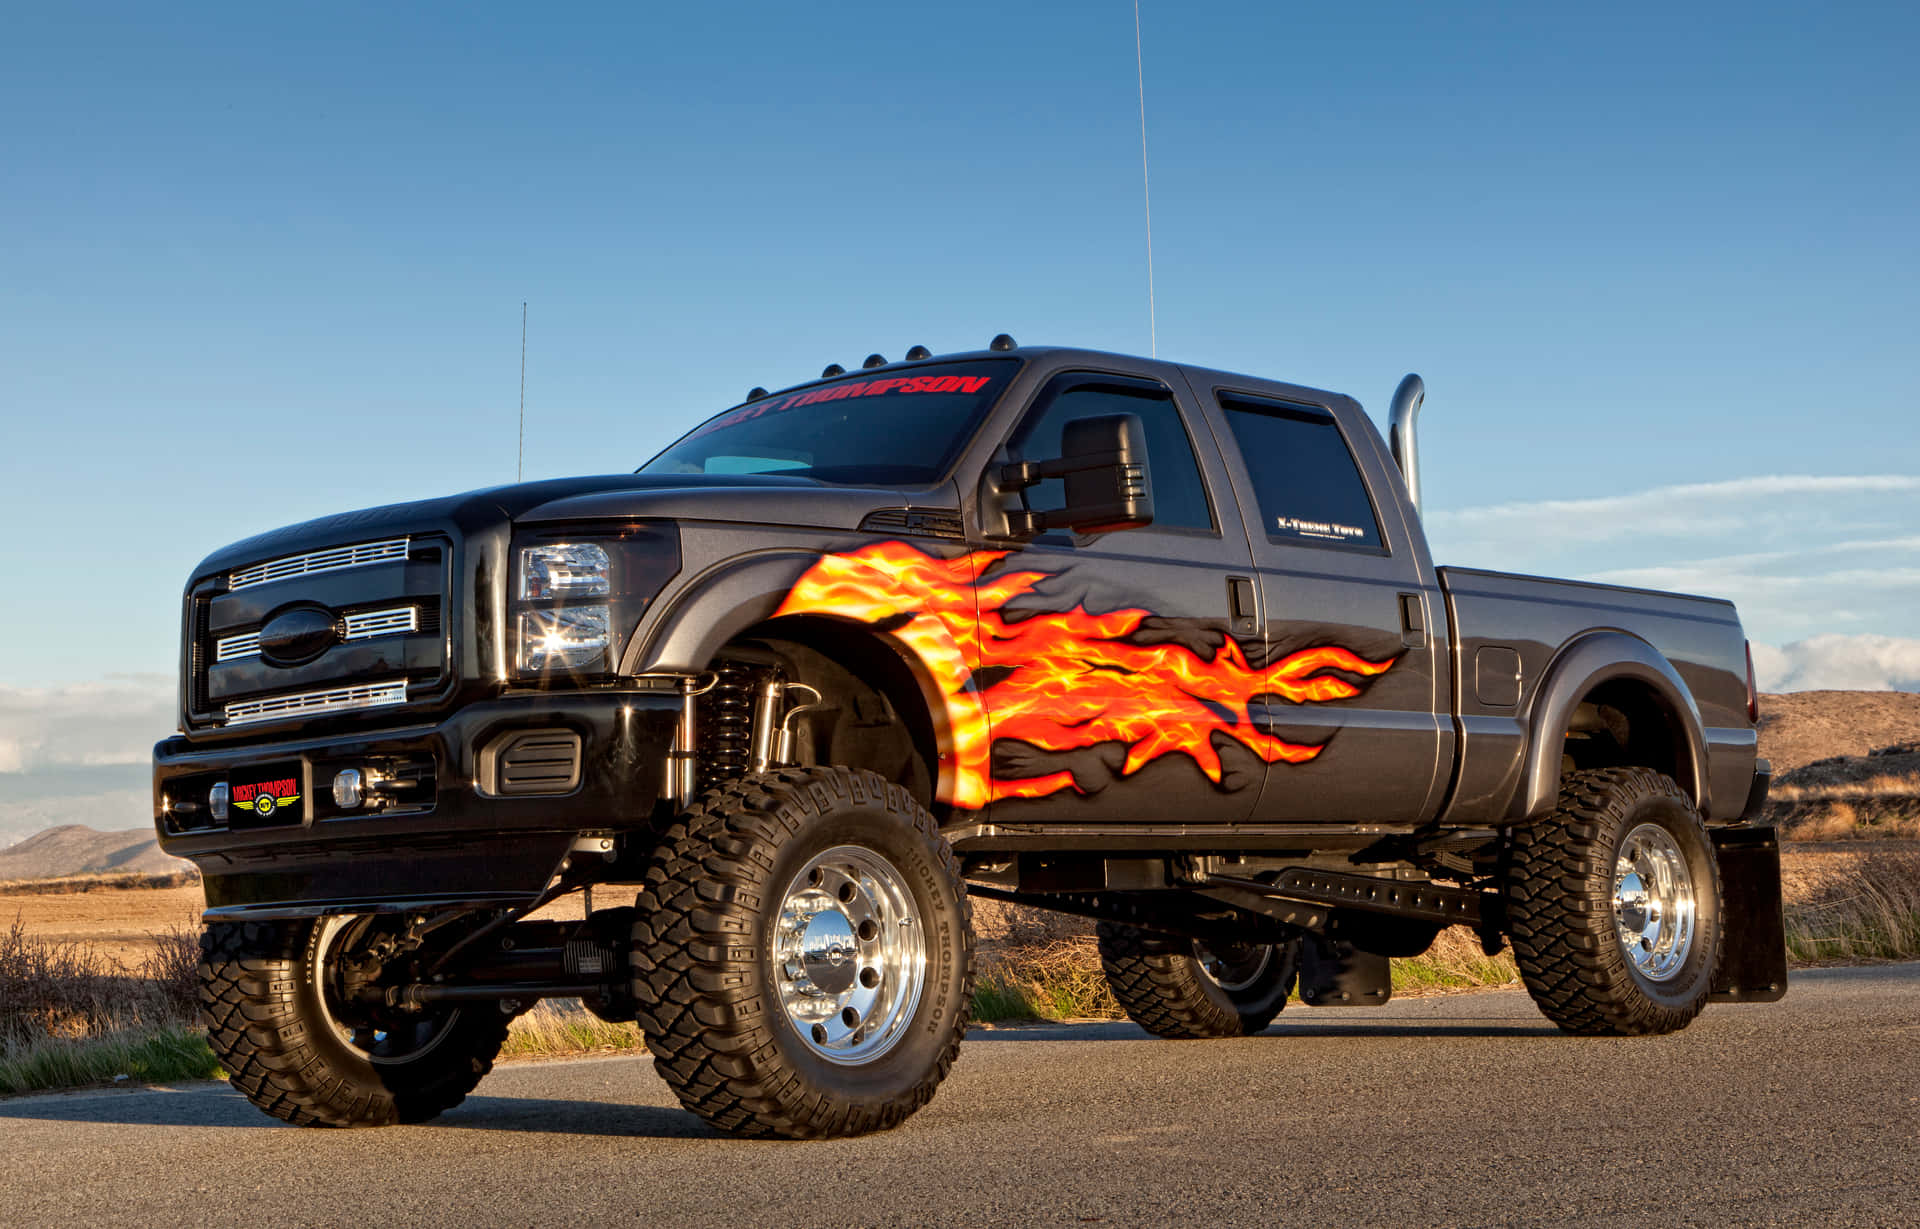 En sort lastbil med flammer på det. Wallpaper